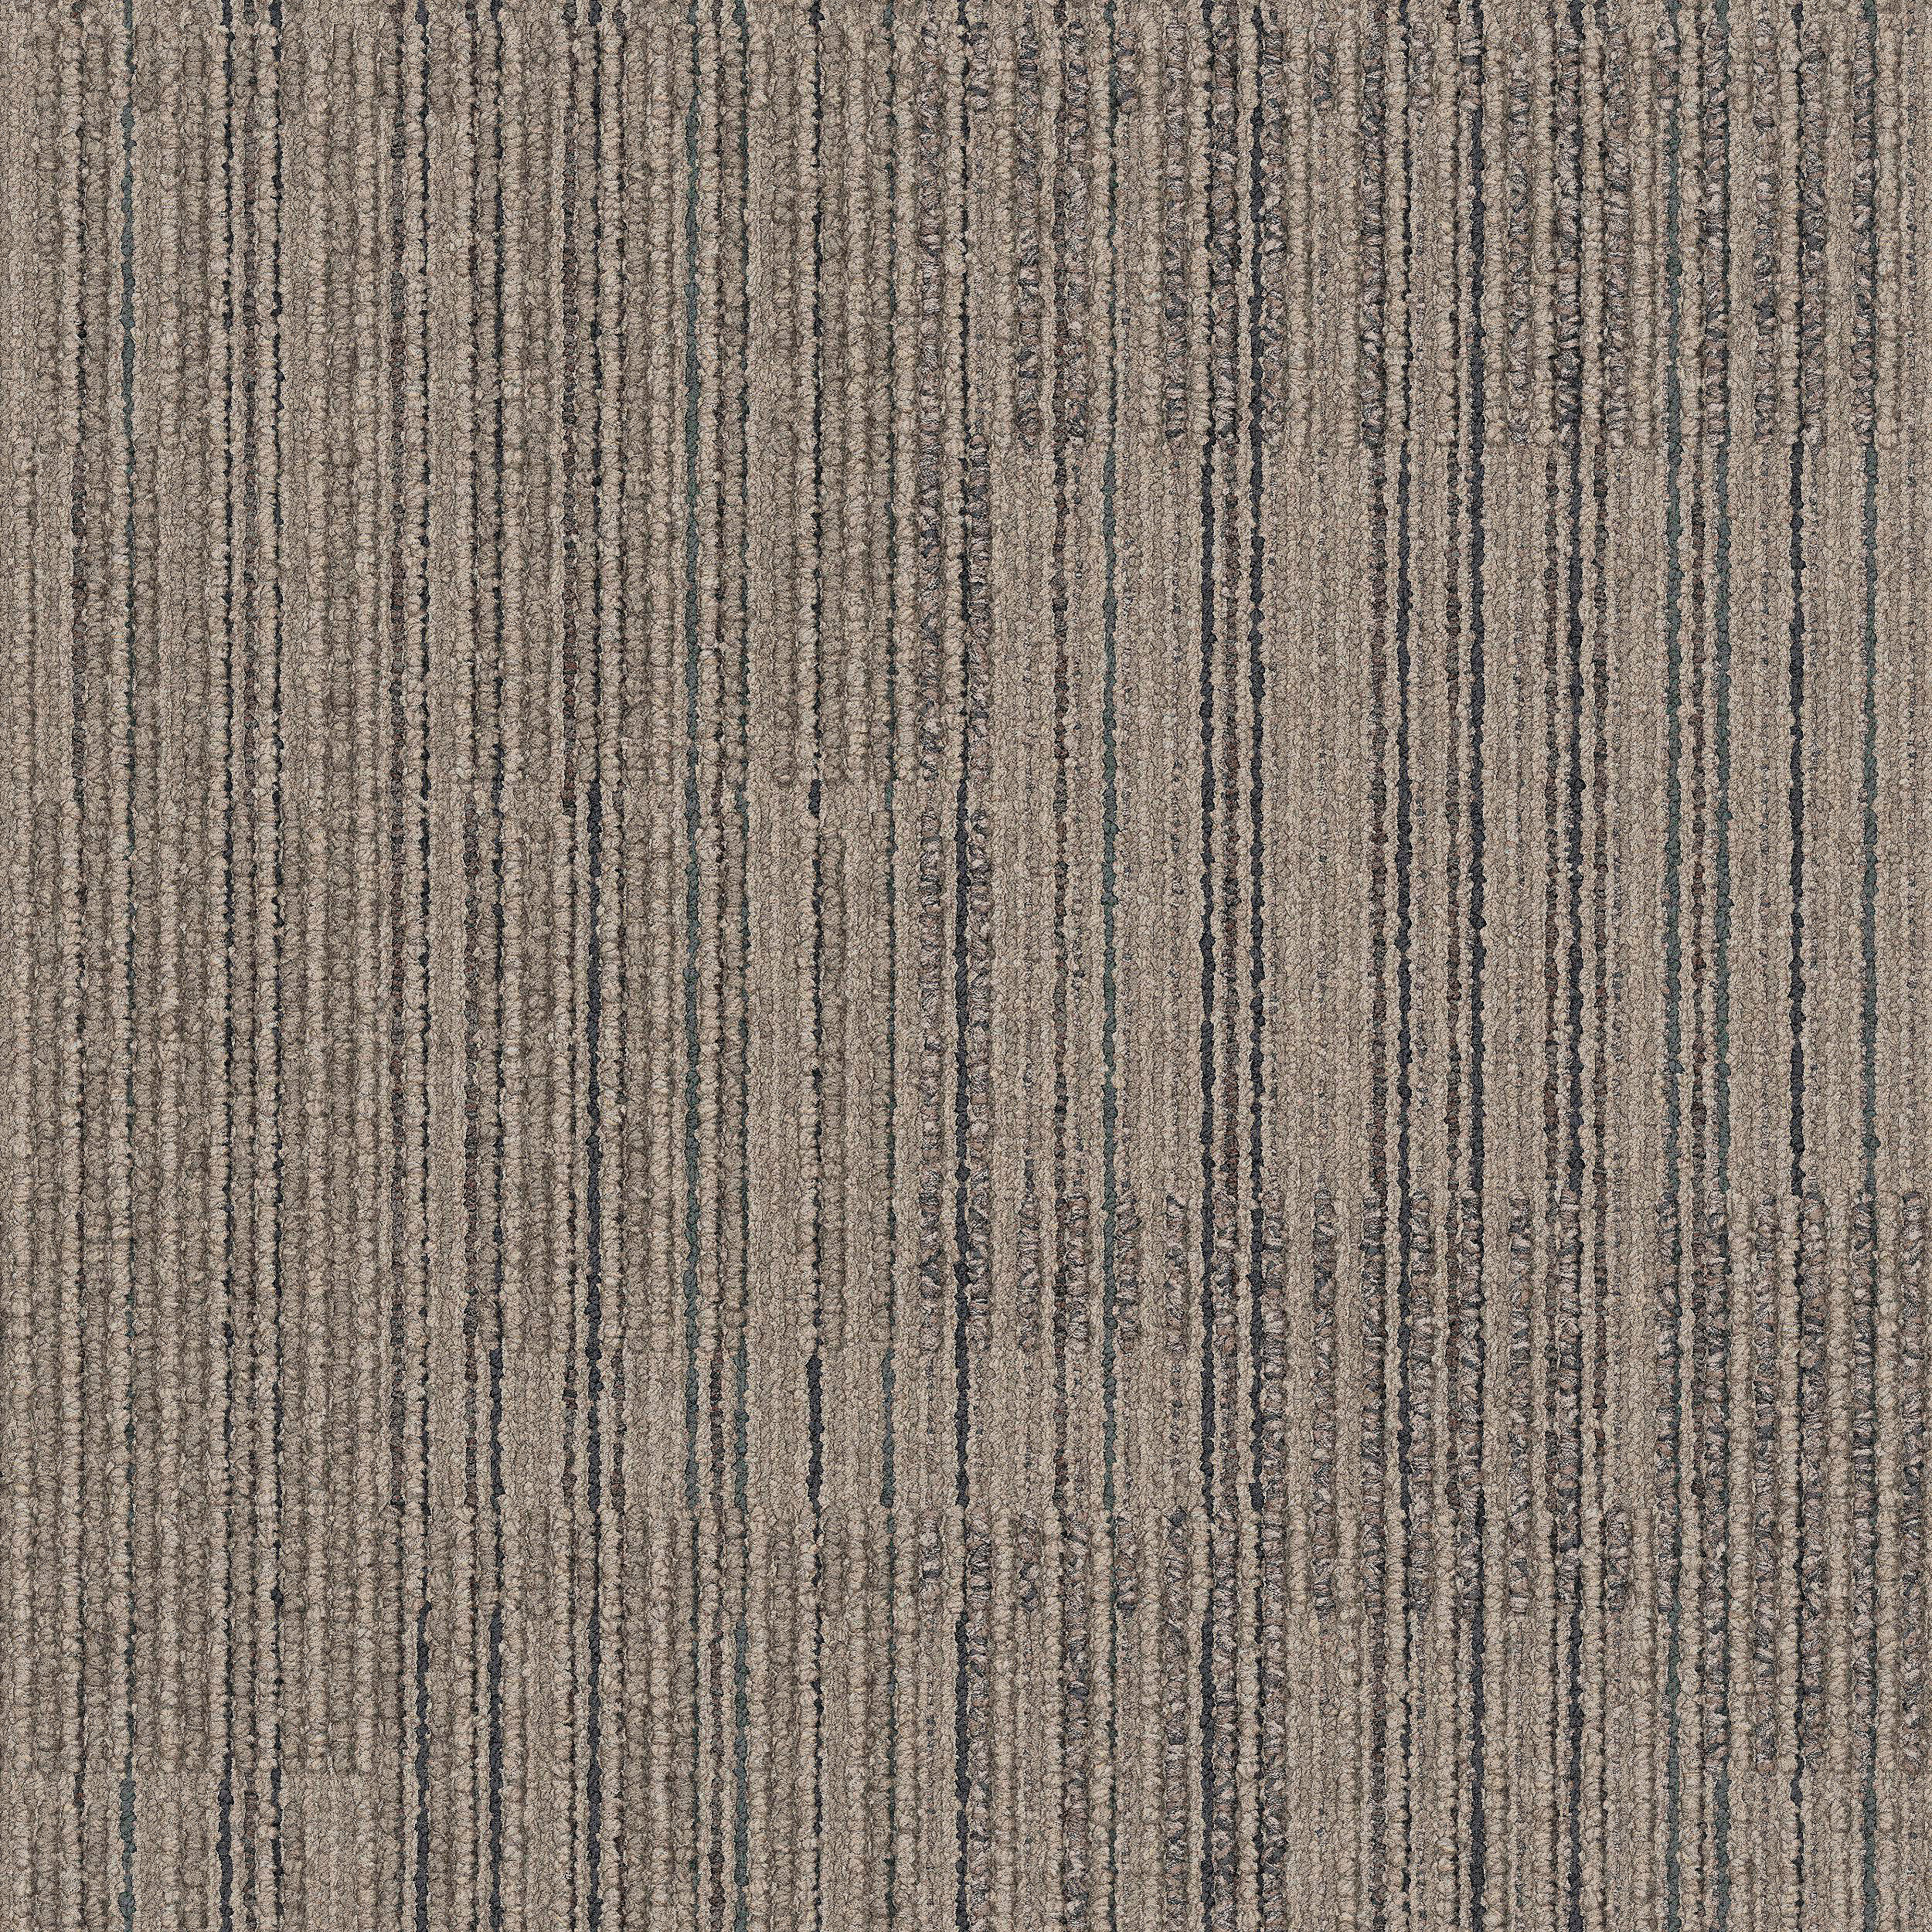 Mantra Carpet Tile In Balance numéro d’image 6